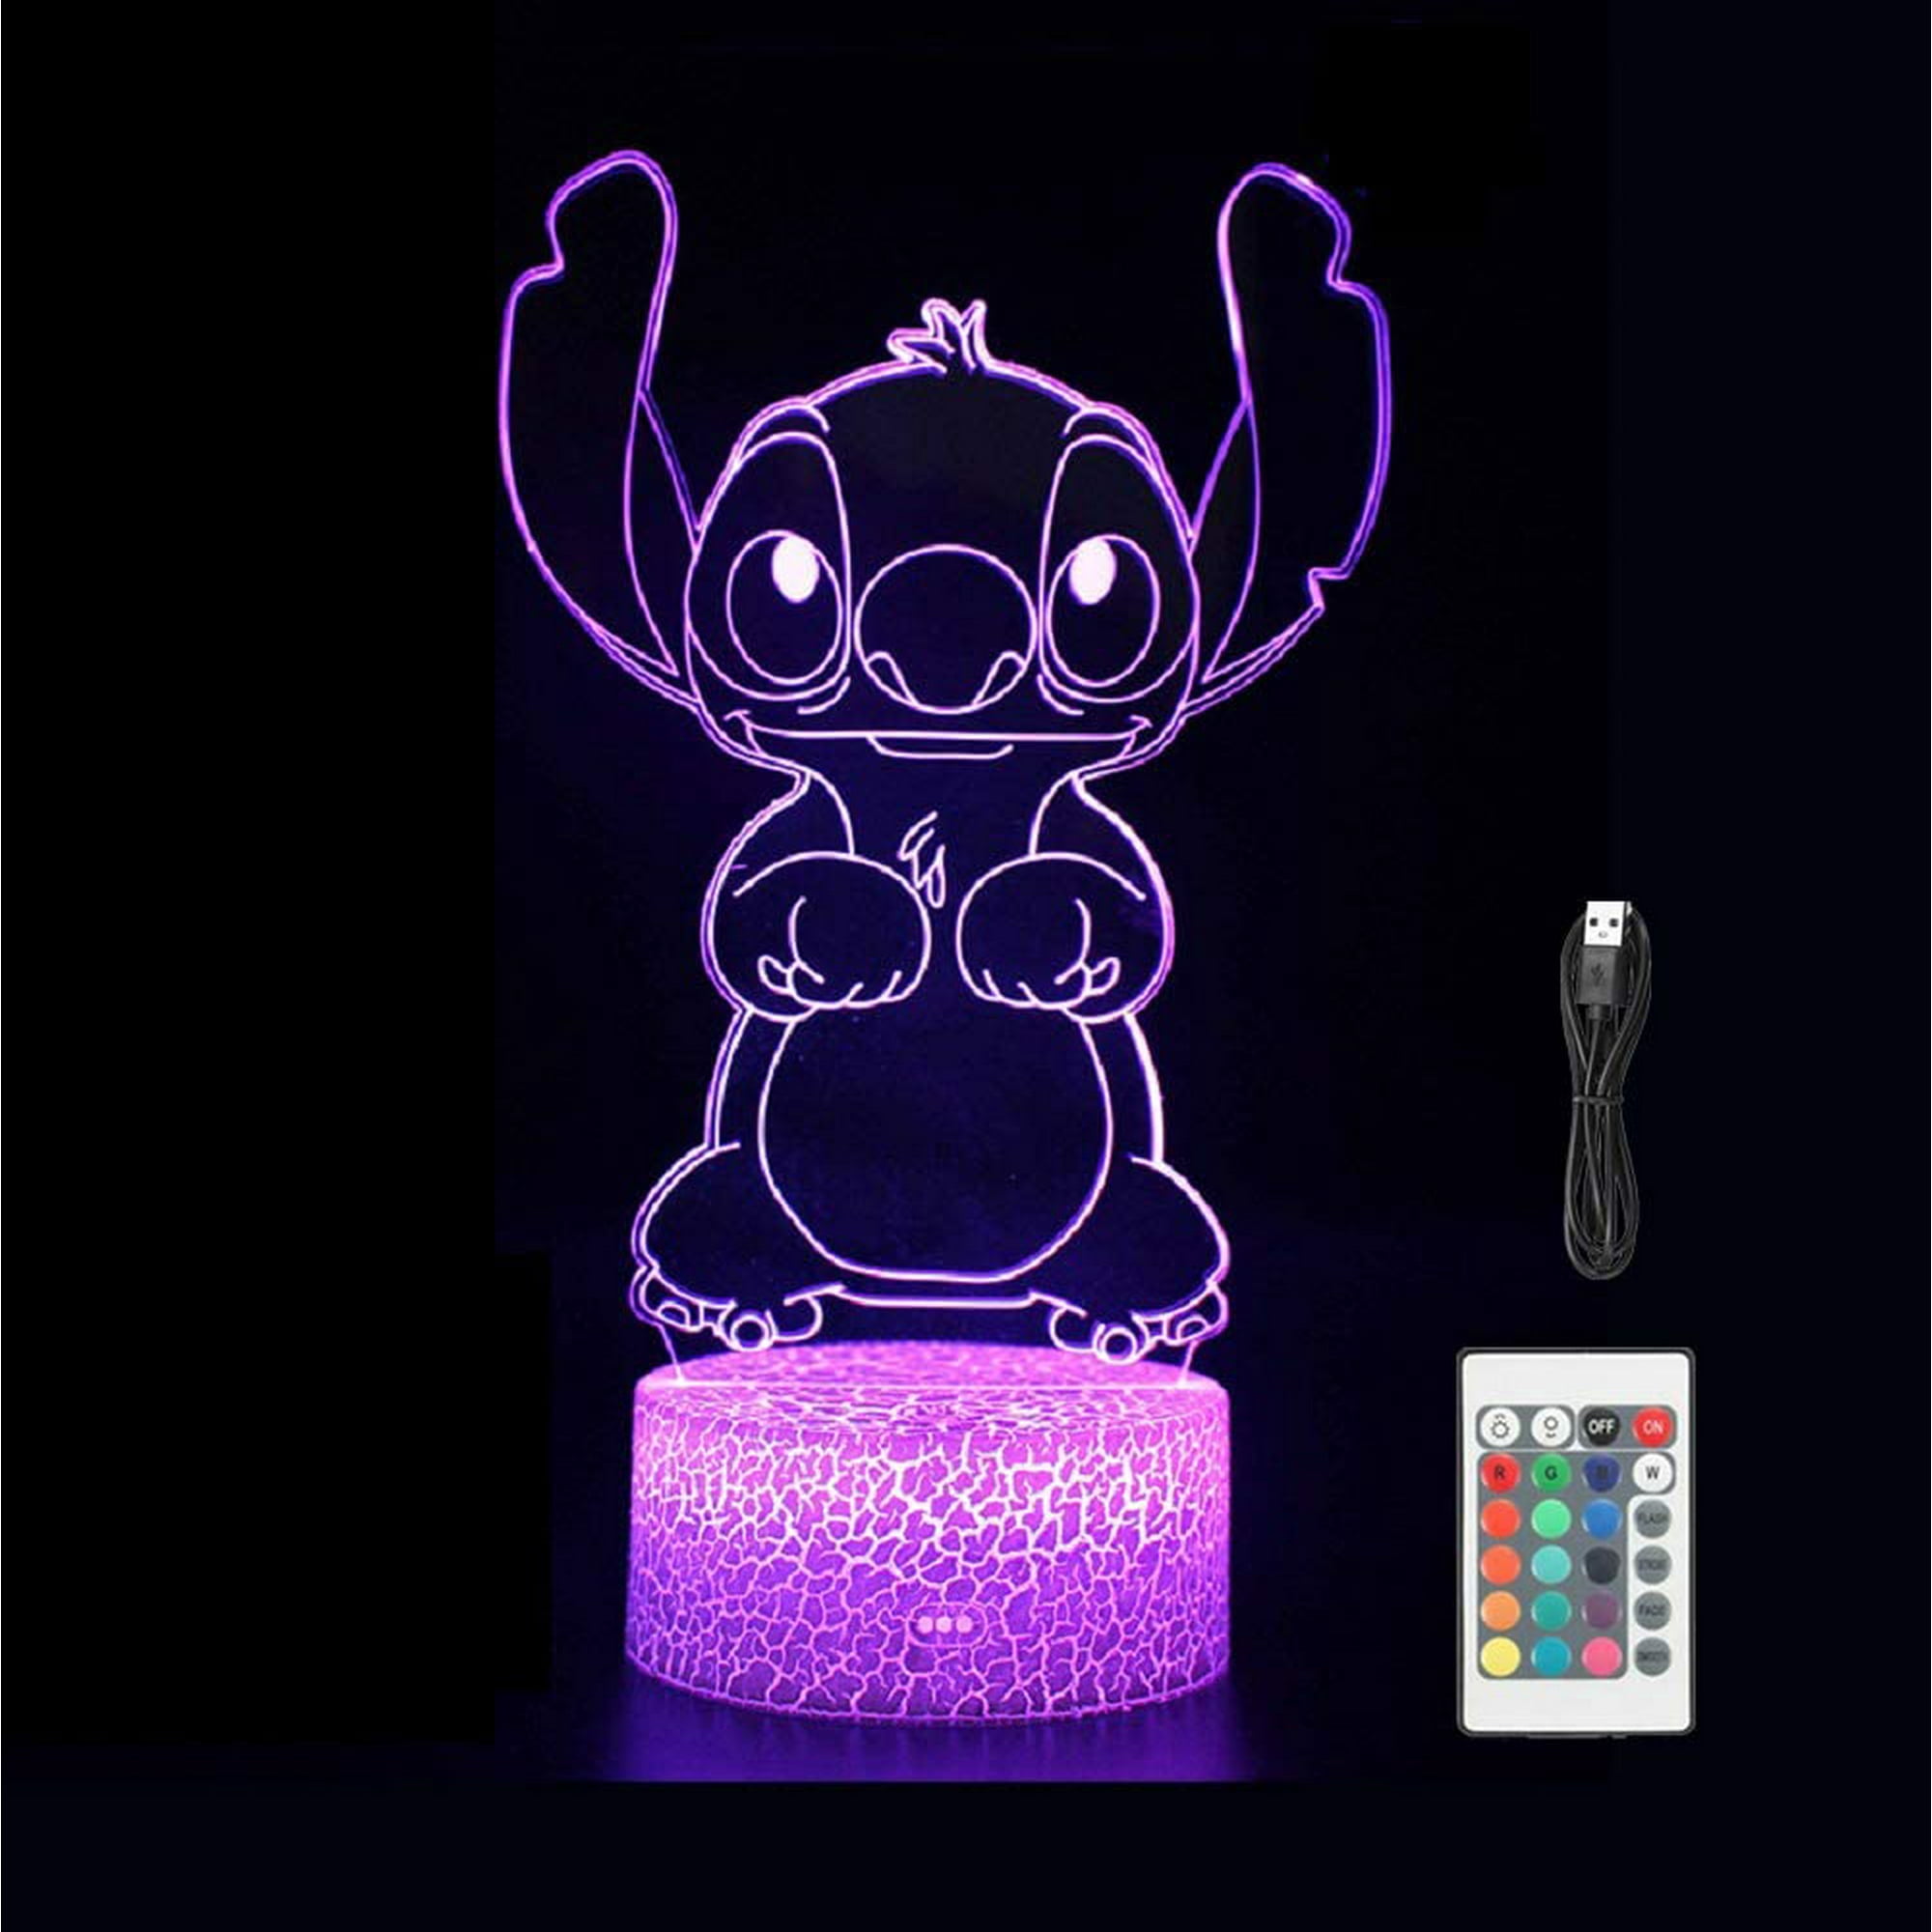 NCJFRKK Stitch Night Light, Stitch Gifts with Smart Remote Control 3D LED  Anime Stitch Light 16 Colors Change Night Light for Kids, Stitch Lamp Kids